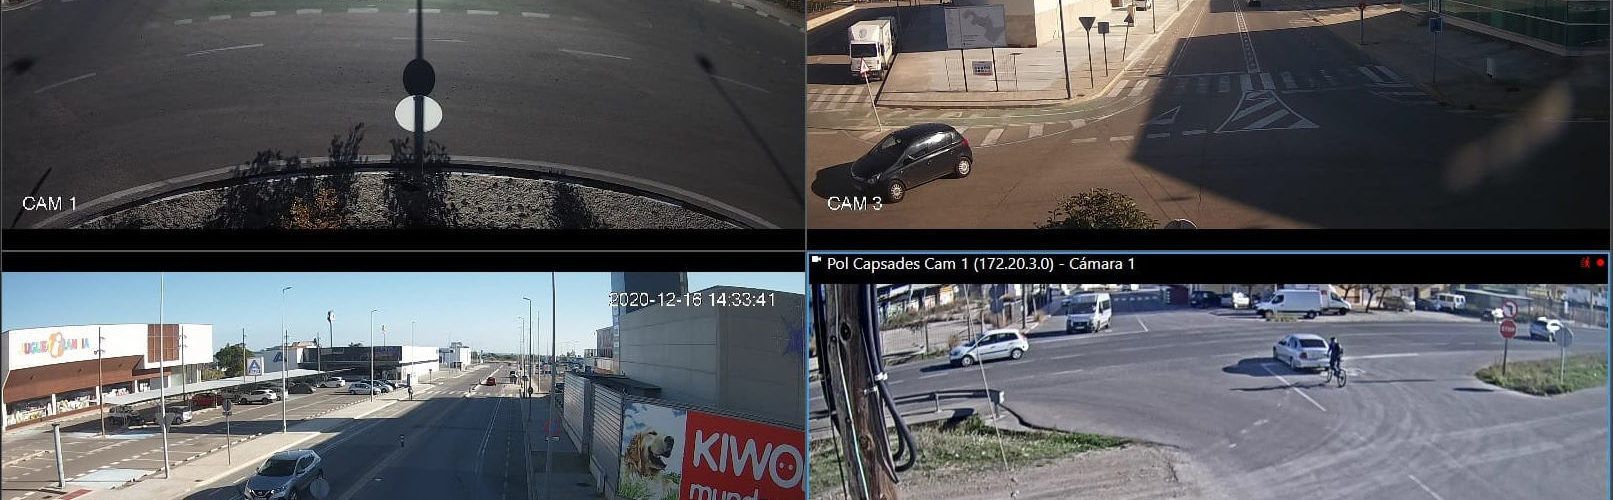 L’Ajuntament de Vinaròs instal·la càmeres de videovigilància als polígons industrials